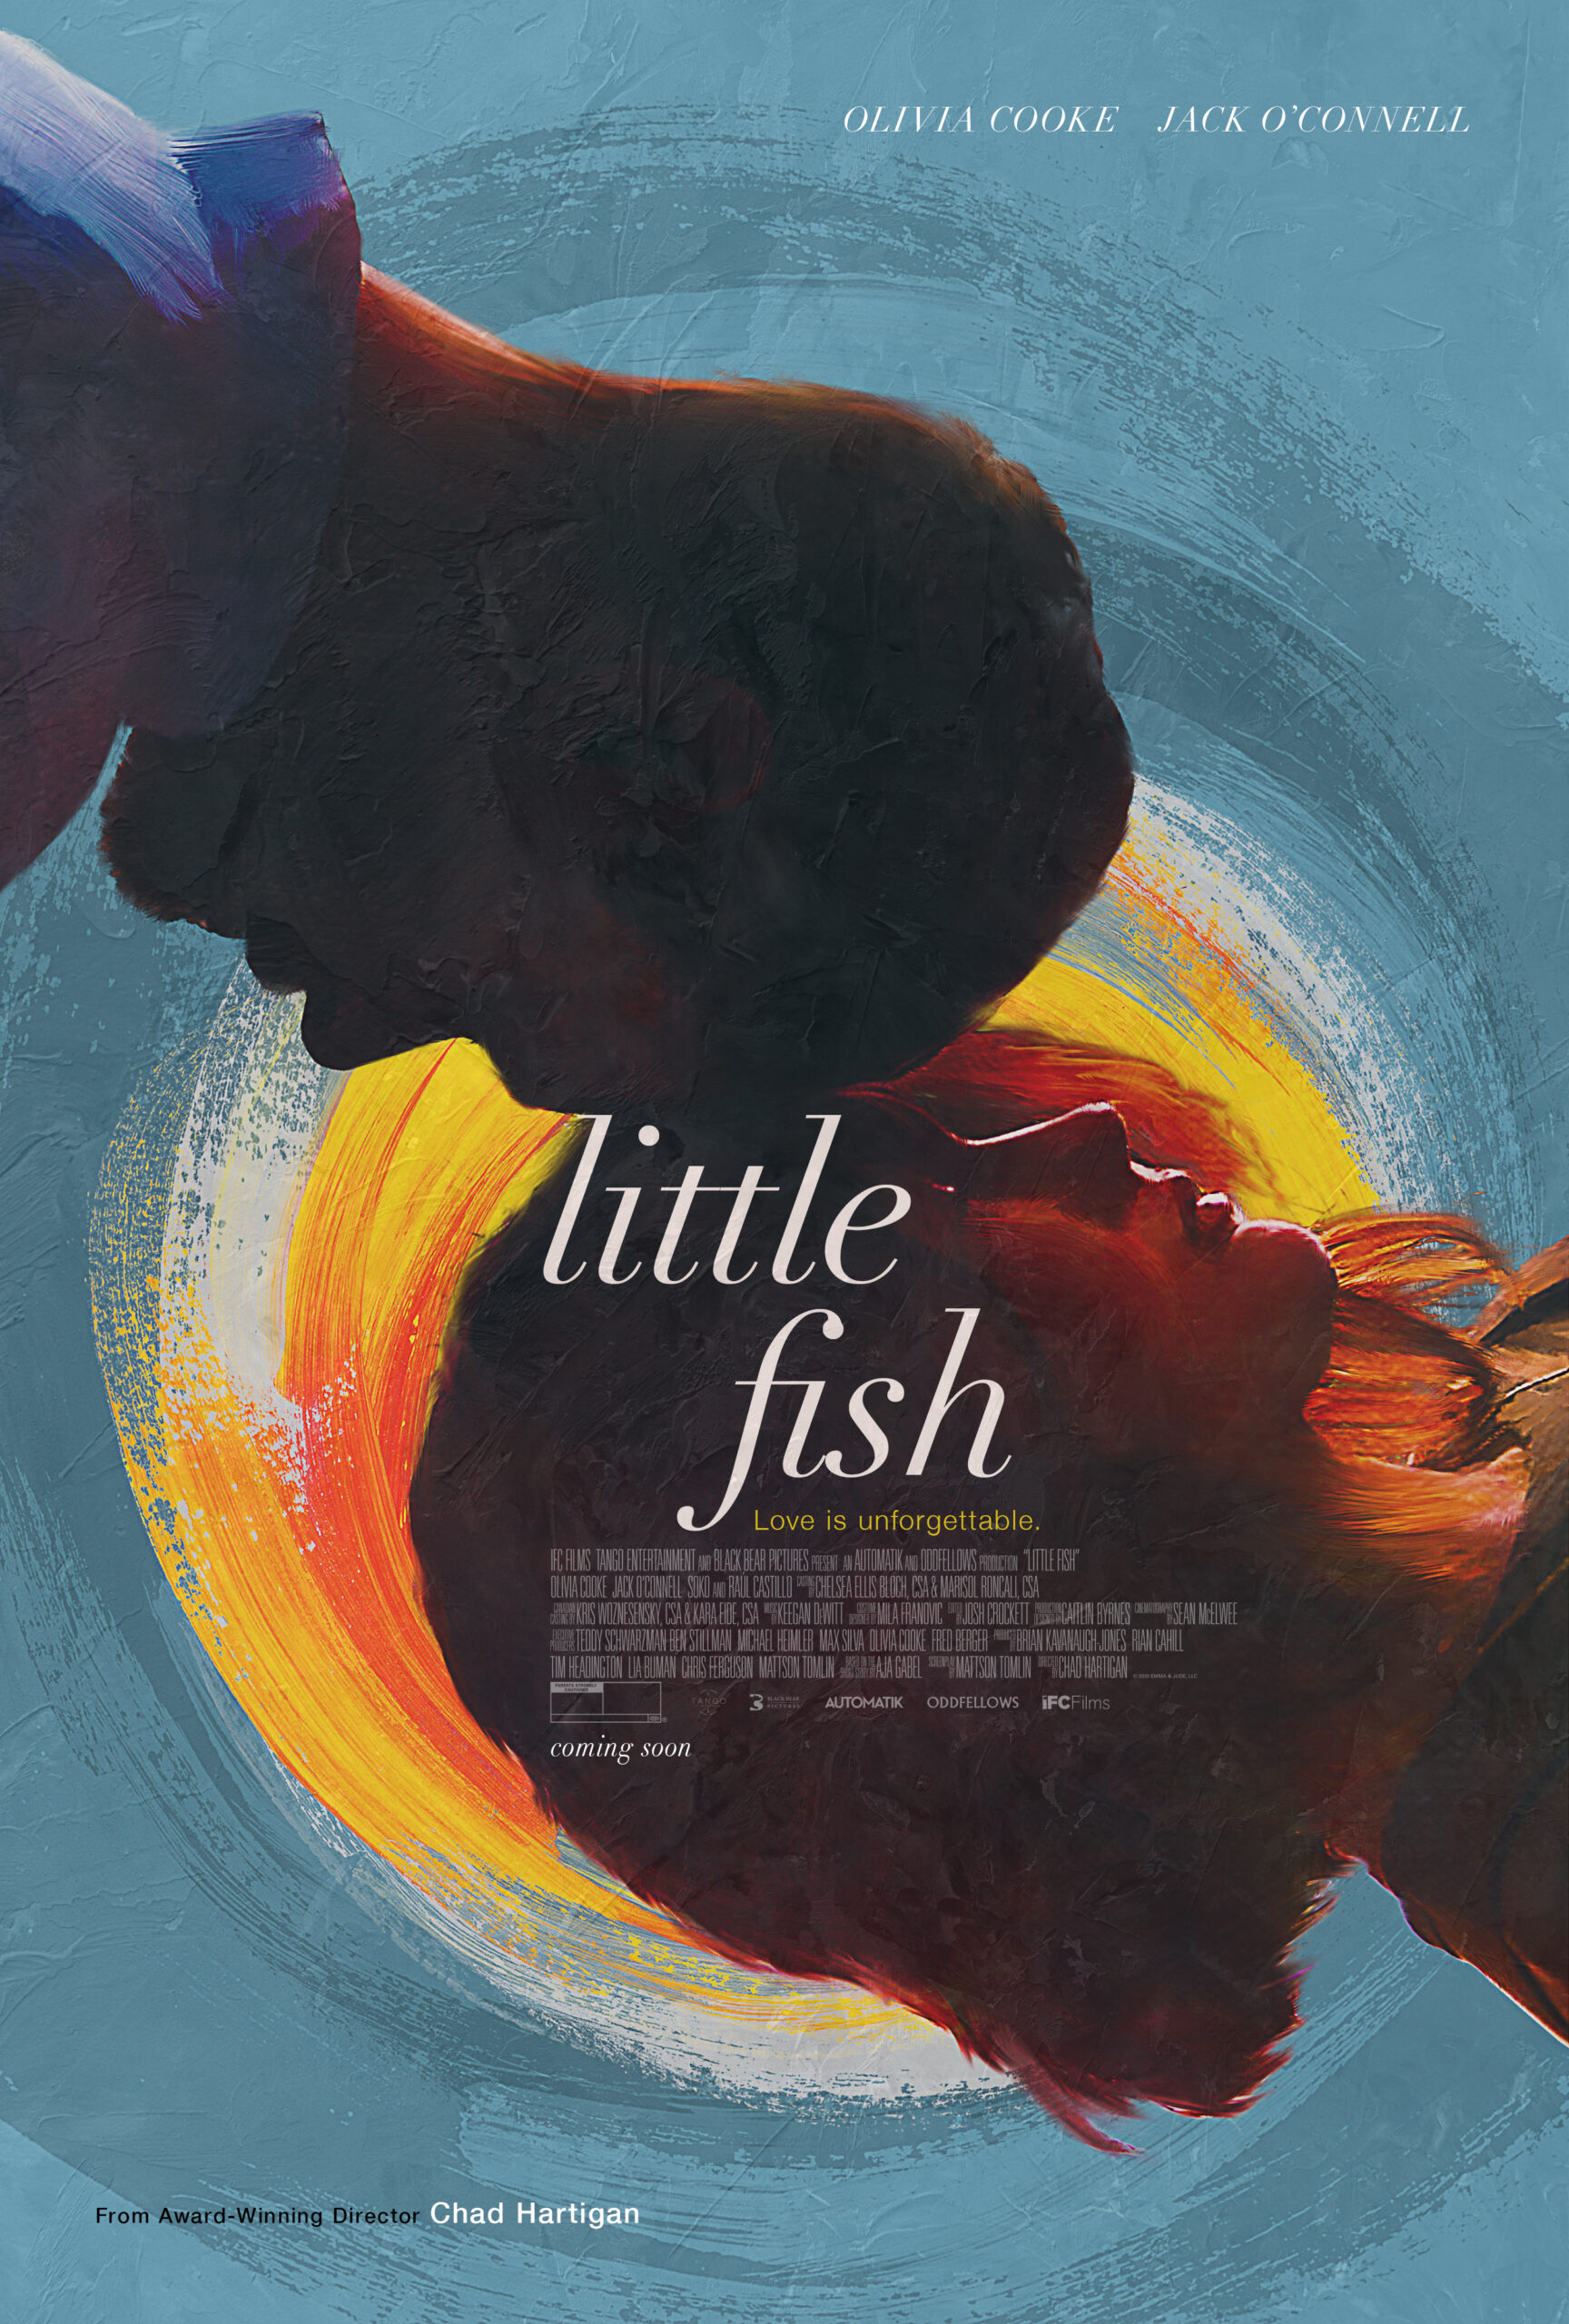 ดูหนังออนไลน์ฟรี Little Fish (2020)